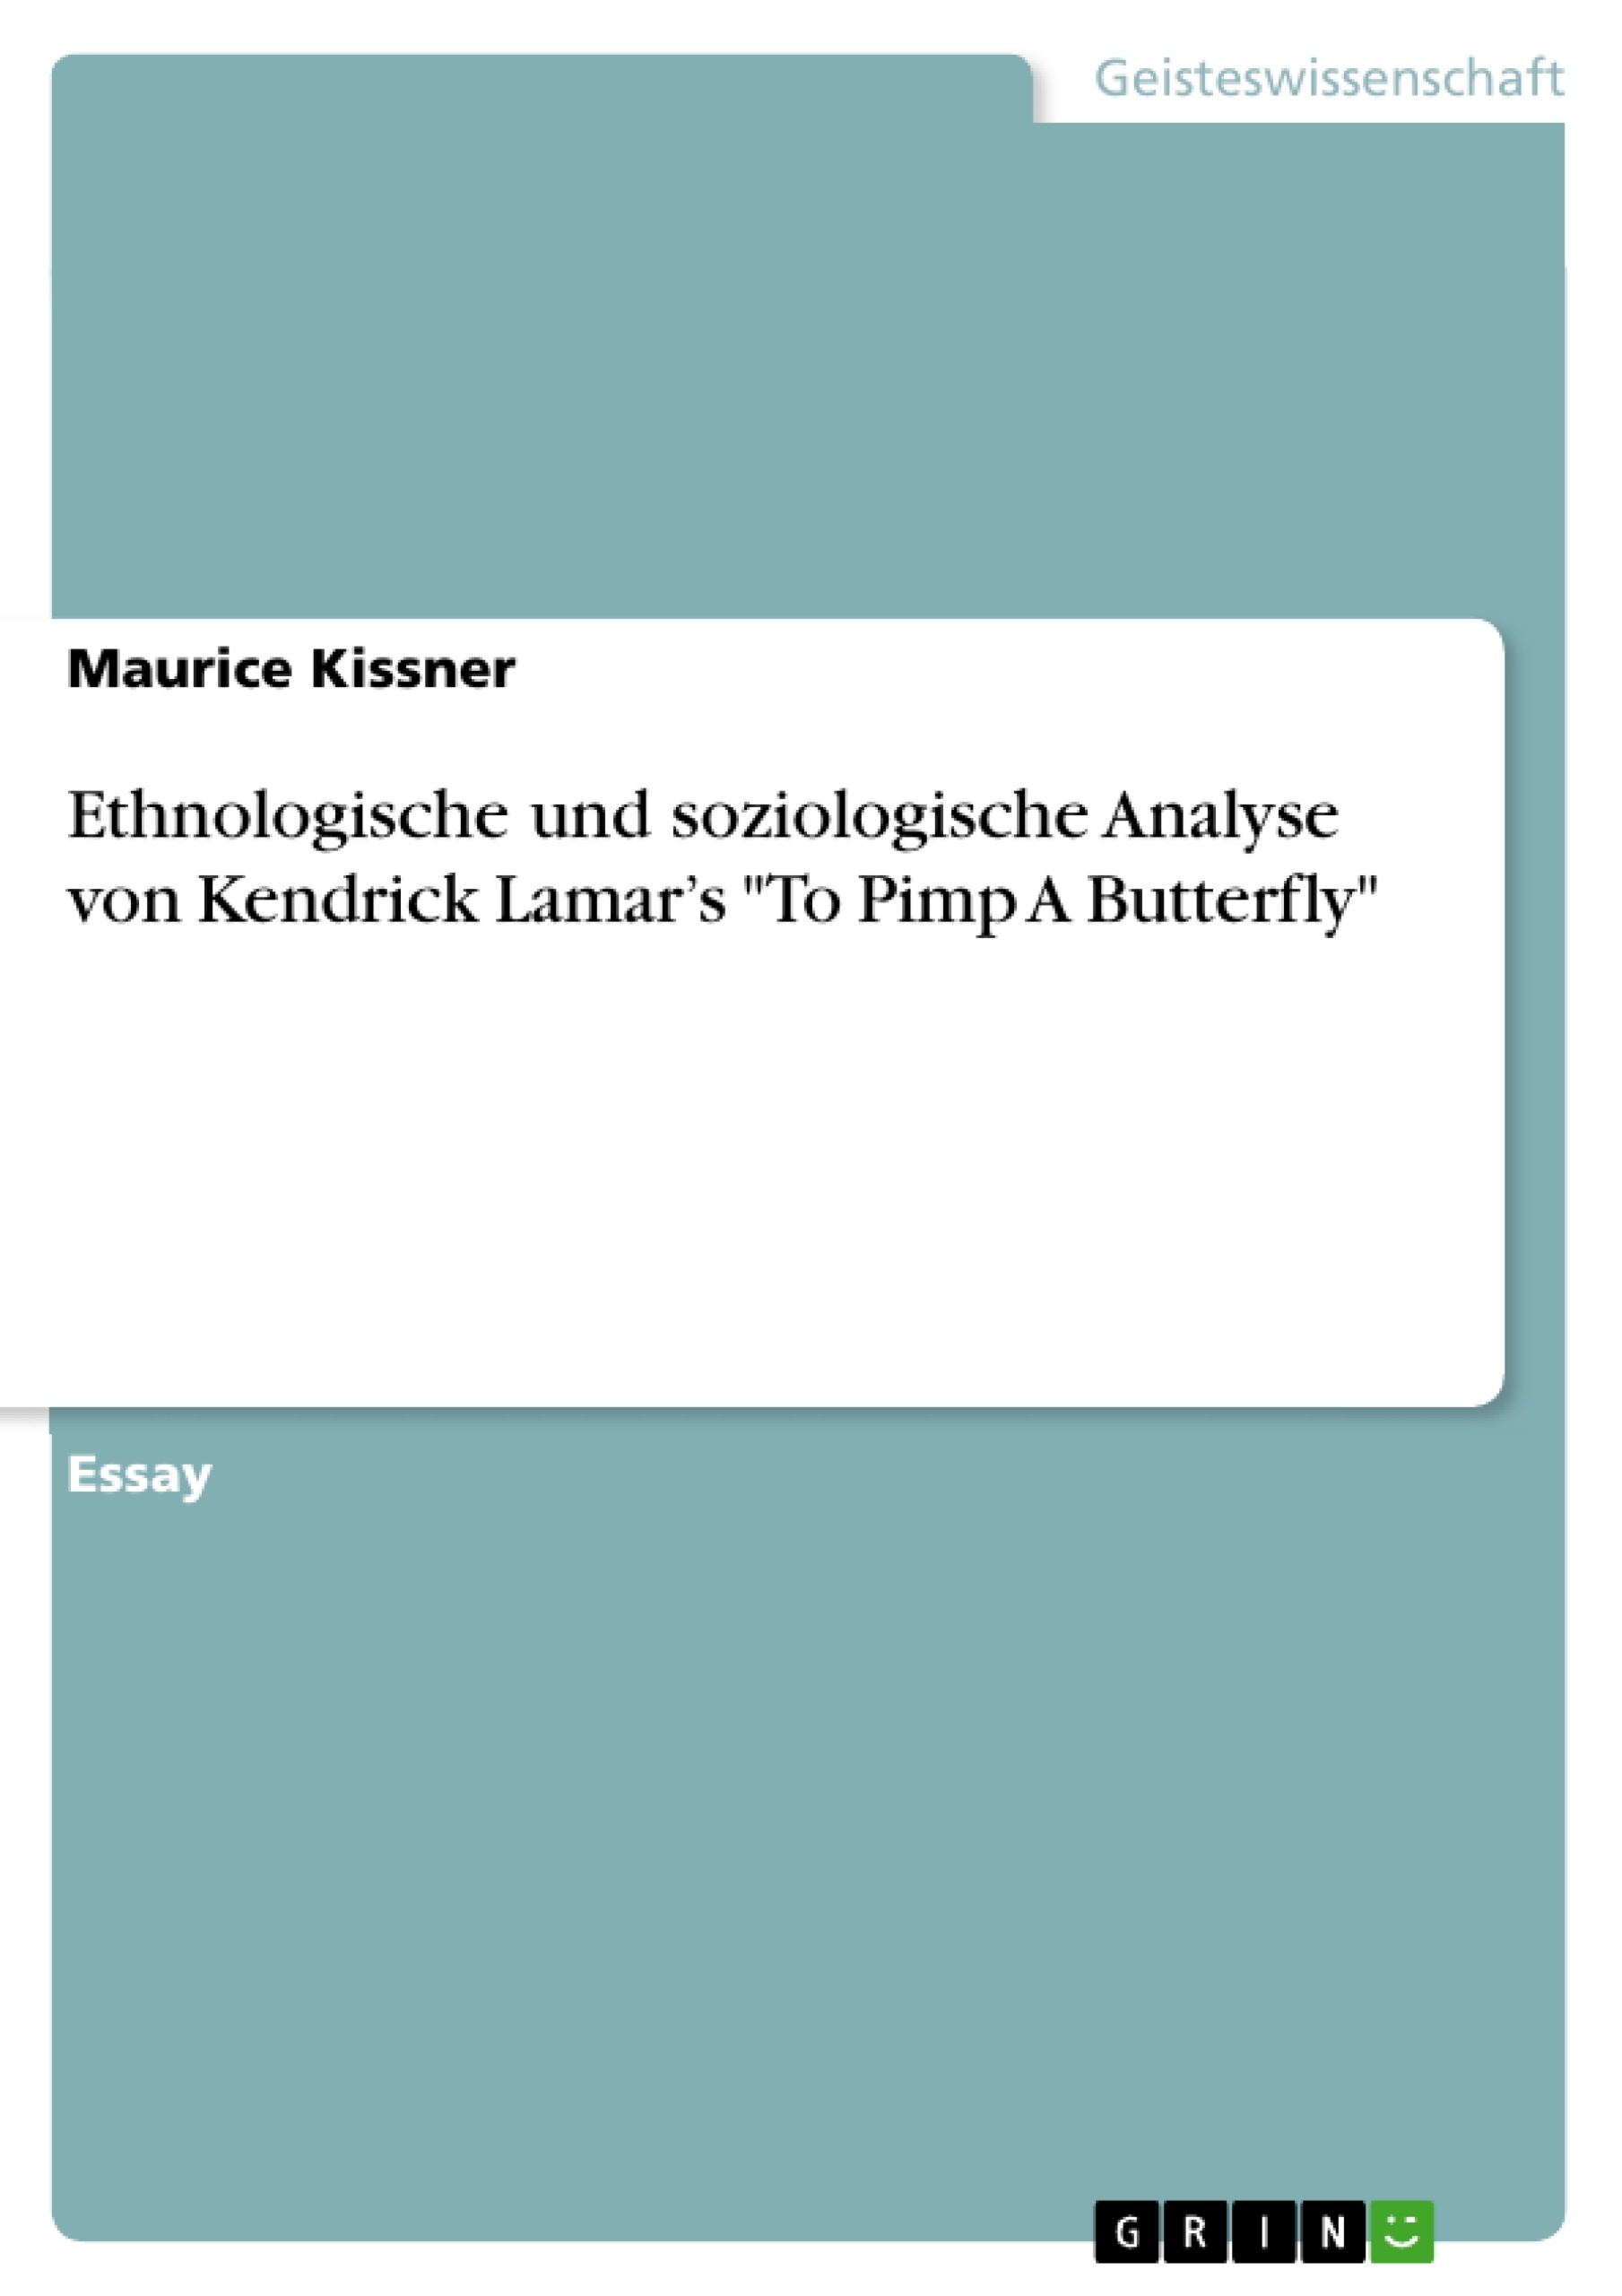 Título: Ethnologische und soziologische Analyse von Kendrick Lamar’s "To Pimp A Butterfly"